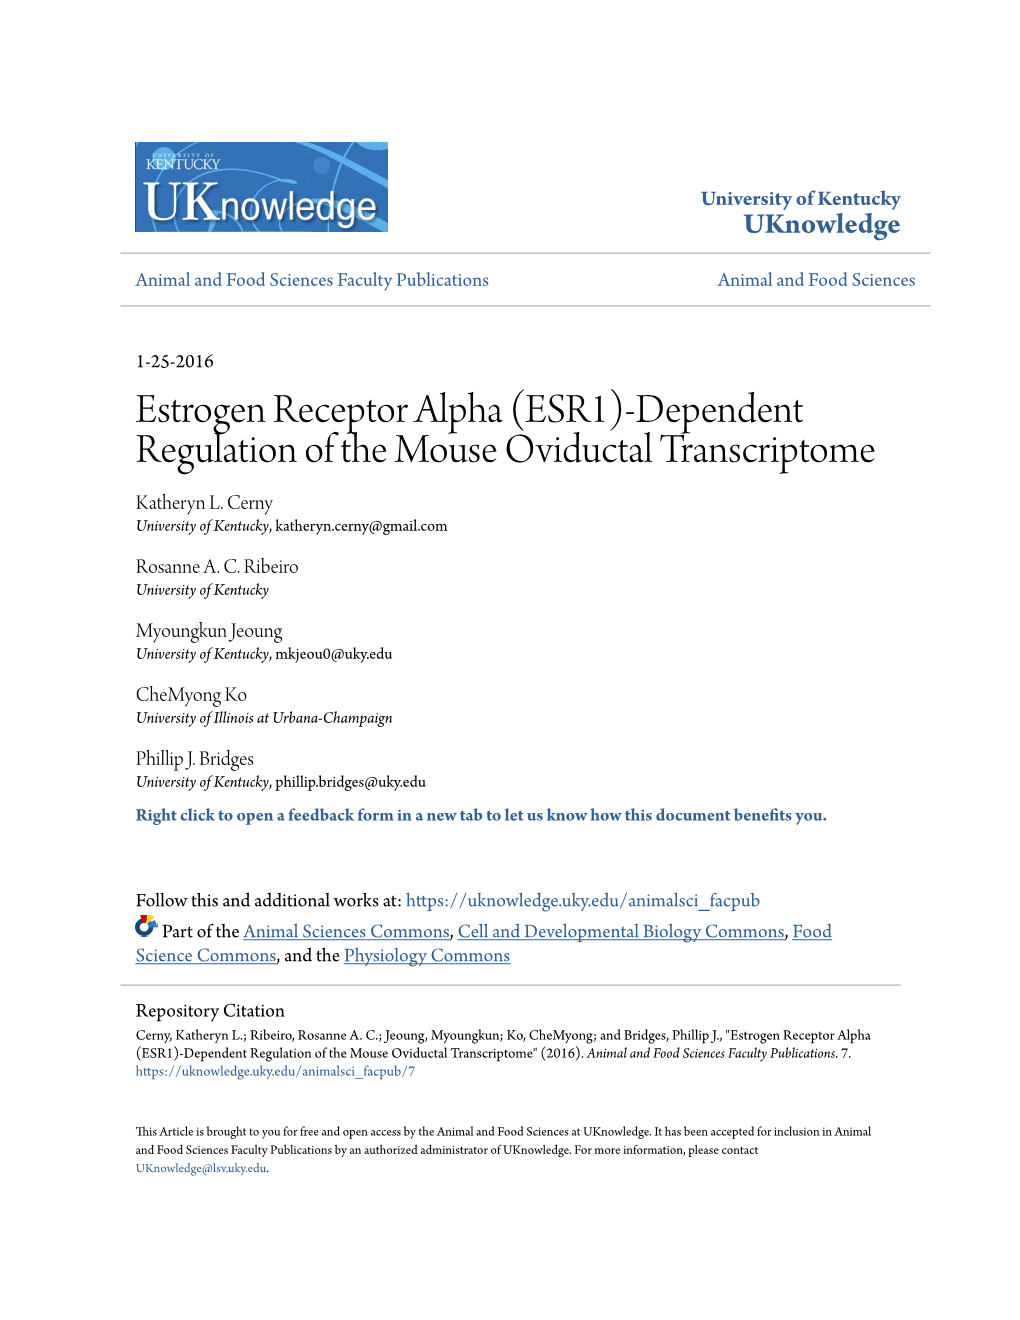 Estrogen Receptor Alpha (ESR1)-Dependent Regulation of the Mouse Oviductal Transcriptome Katheryn L